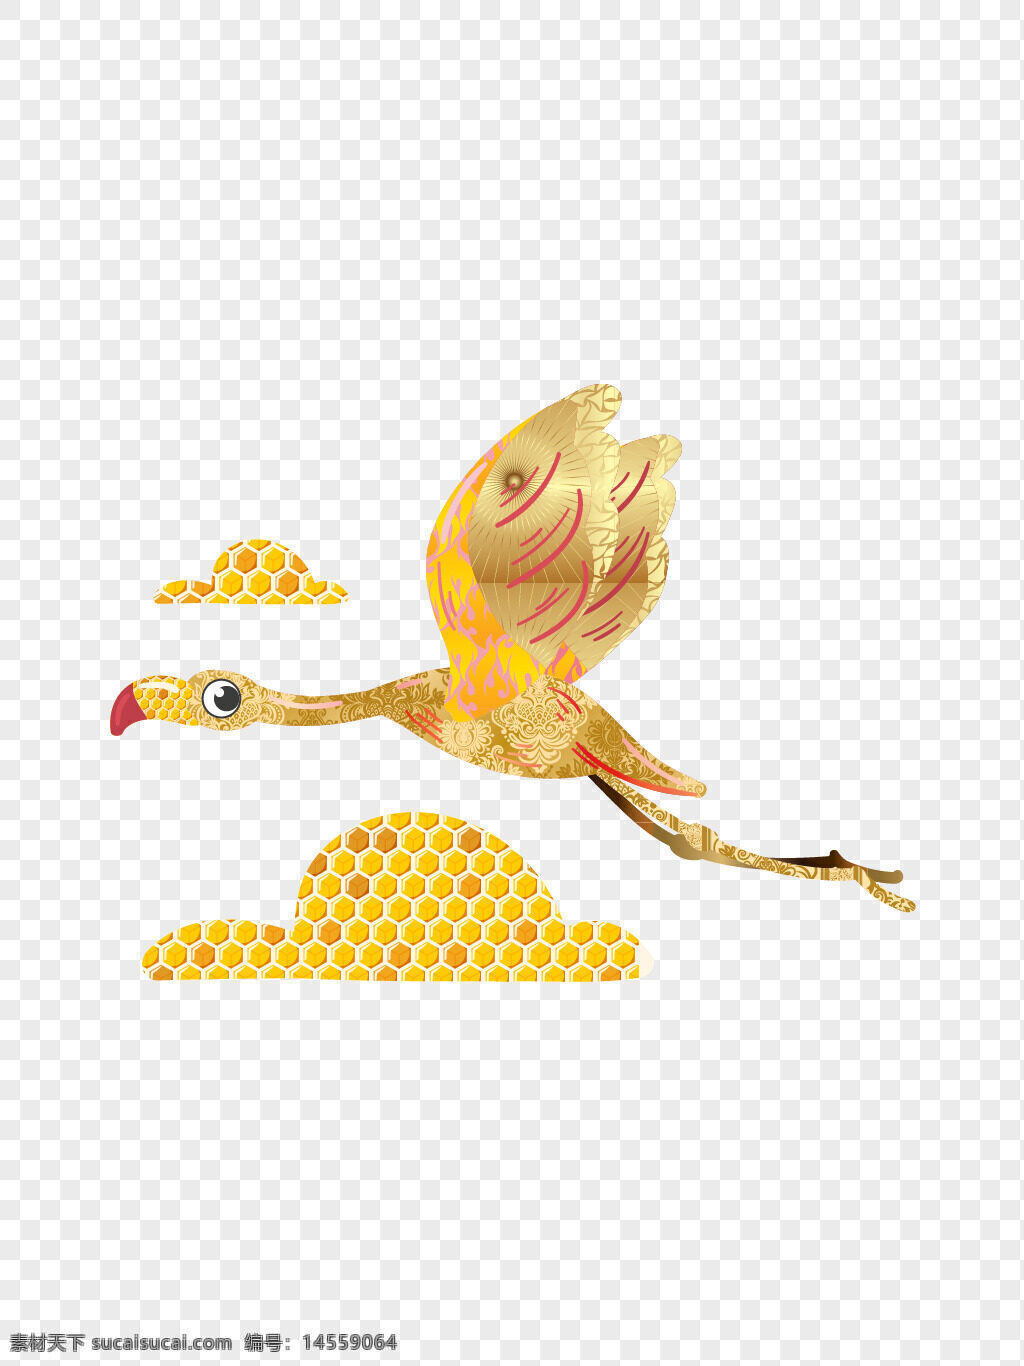 黄金 云上 飞翔 金色 火烈鸟 矢量图 黄金云上 飞翔的金色火烈鸟 云上飞翔的金色火烈鸟 黄金云上飞翔的金色火烈鸟矢量图